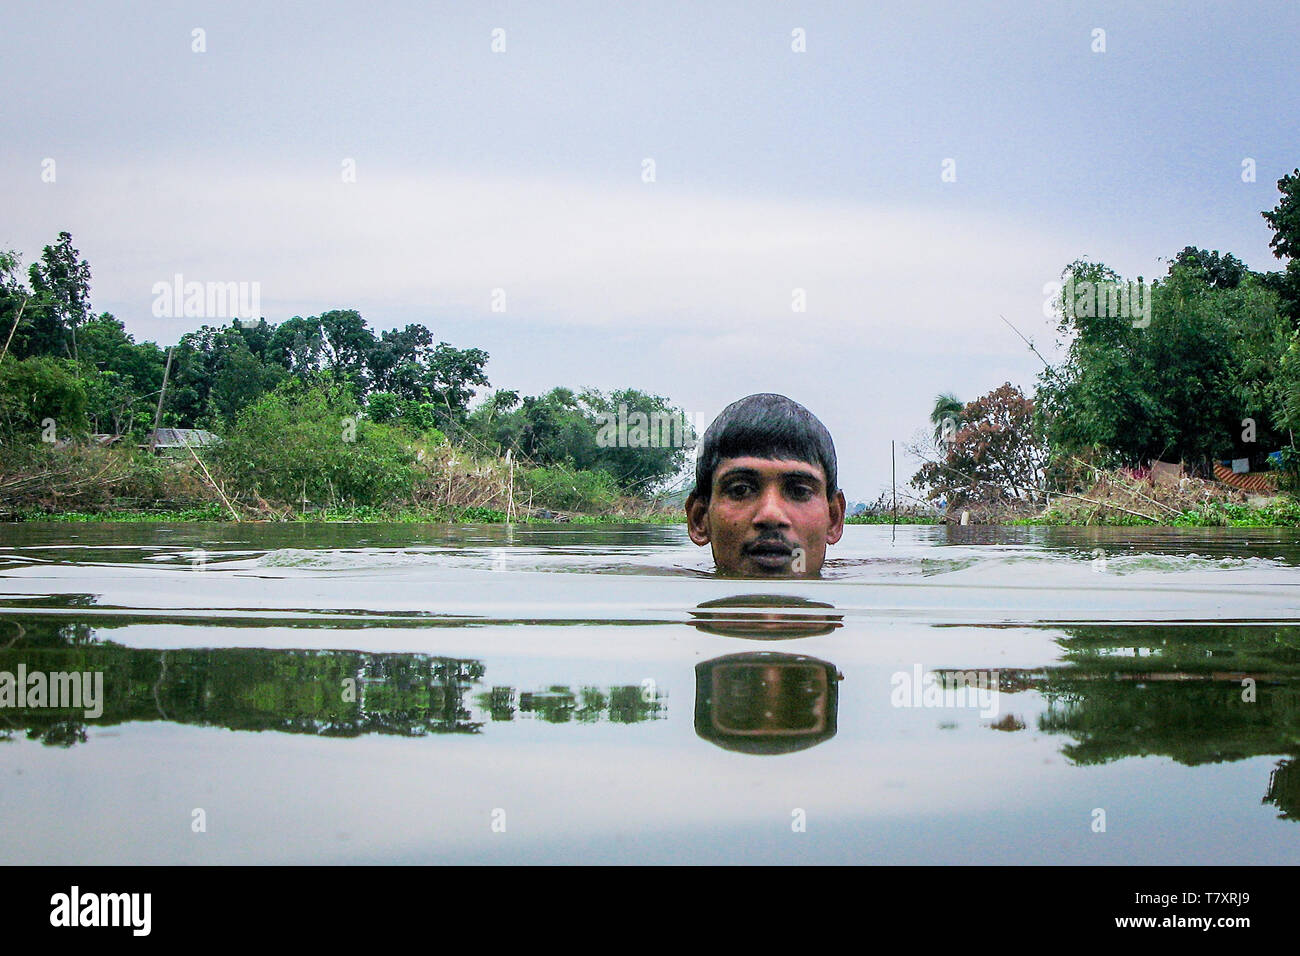 Mohammad Khokon schwimmt auf dem Jamuna Flusses, wo sein Haus verwendet werden. Eine grelle Flut gewaschen in den Yamuna Fluss in Sirajganj, Bangladesch im Jahr 2007. Die globale Erwärmung verursachen der Monsun Regen und Überschwemmungen früher zu starten. Die globale Erwärmung auch accellerate das Schmelzen von Eis und Schnee im Himalaya, die Feeds in den bereits gesättigten Flüsse, der Ganges Delta machen. Das Resultat ist verheerend für Menschen, die in den dicht besiedelten delta Bereich leben. Während der Himalaya und Überschwemmungen aus dem Norden wreak Verwüstung, der Anstieg des Meeresspiegels Salzwasser eindringen in die geringe Ursache liegenden landwirtschaftlichen Zonen alo Stockfoto